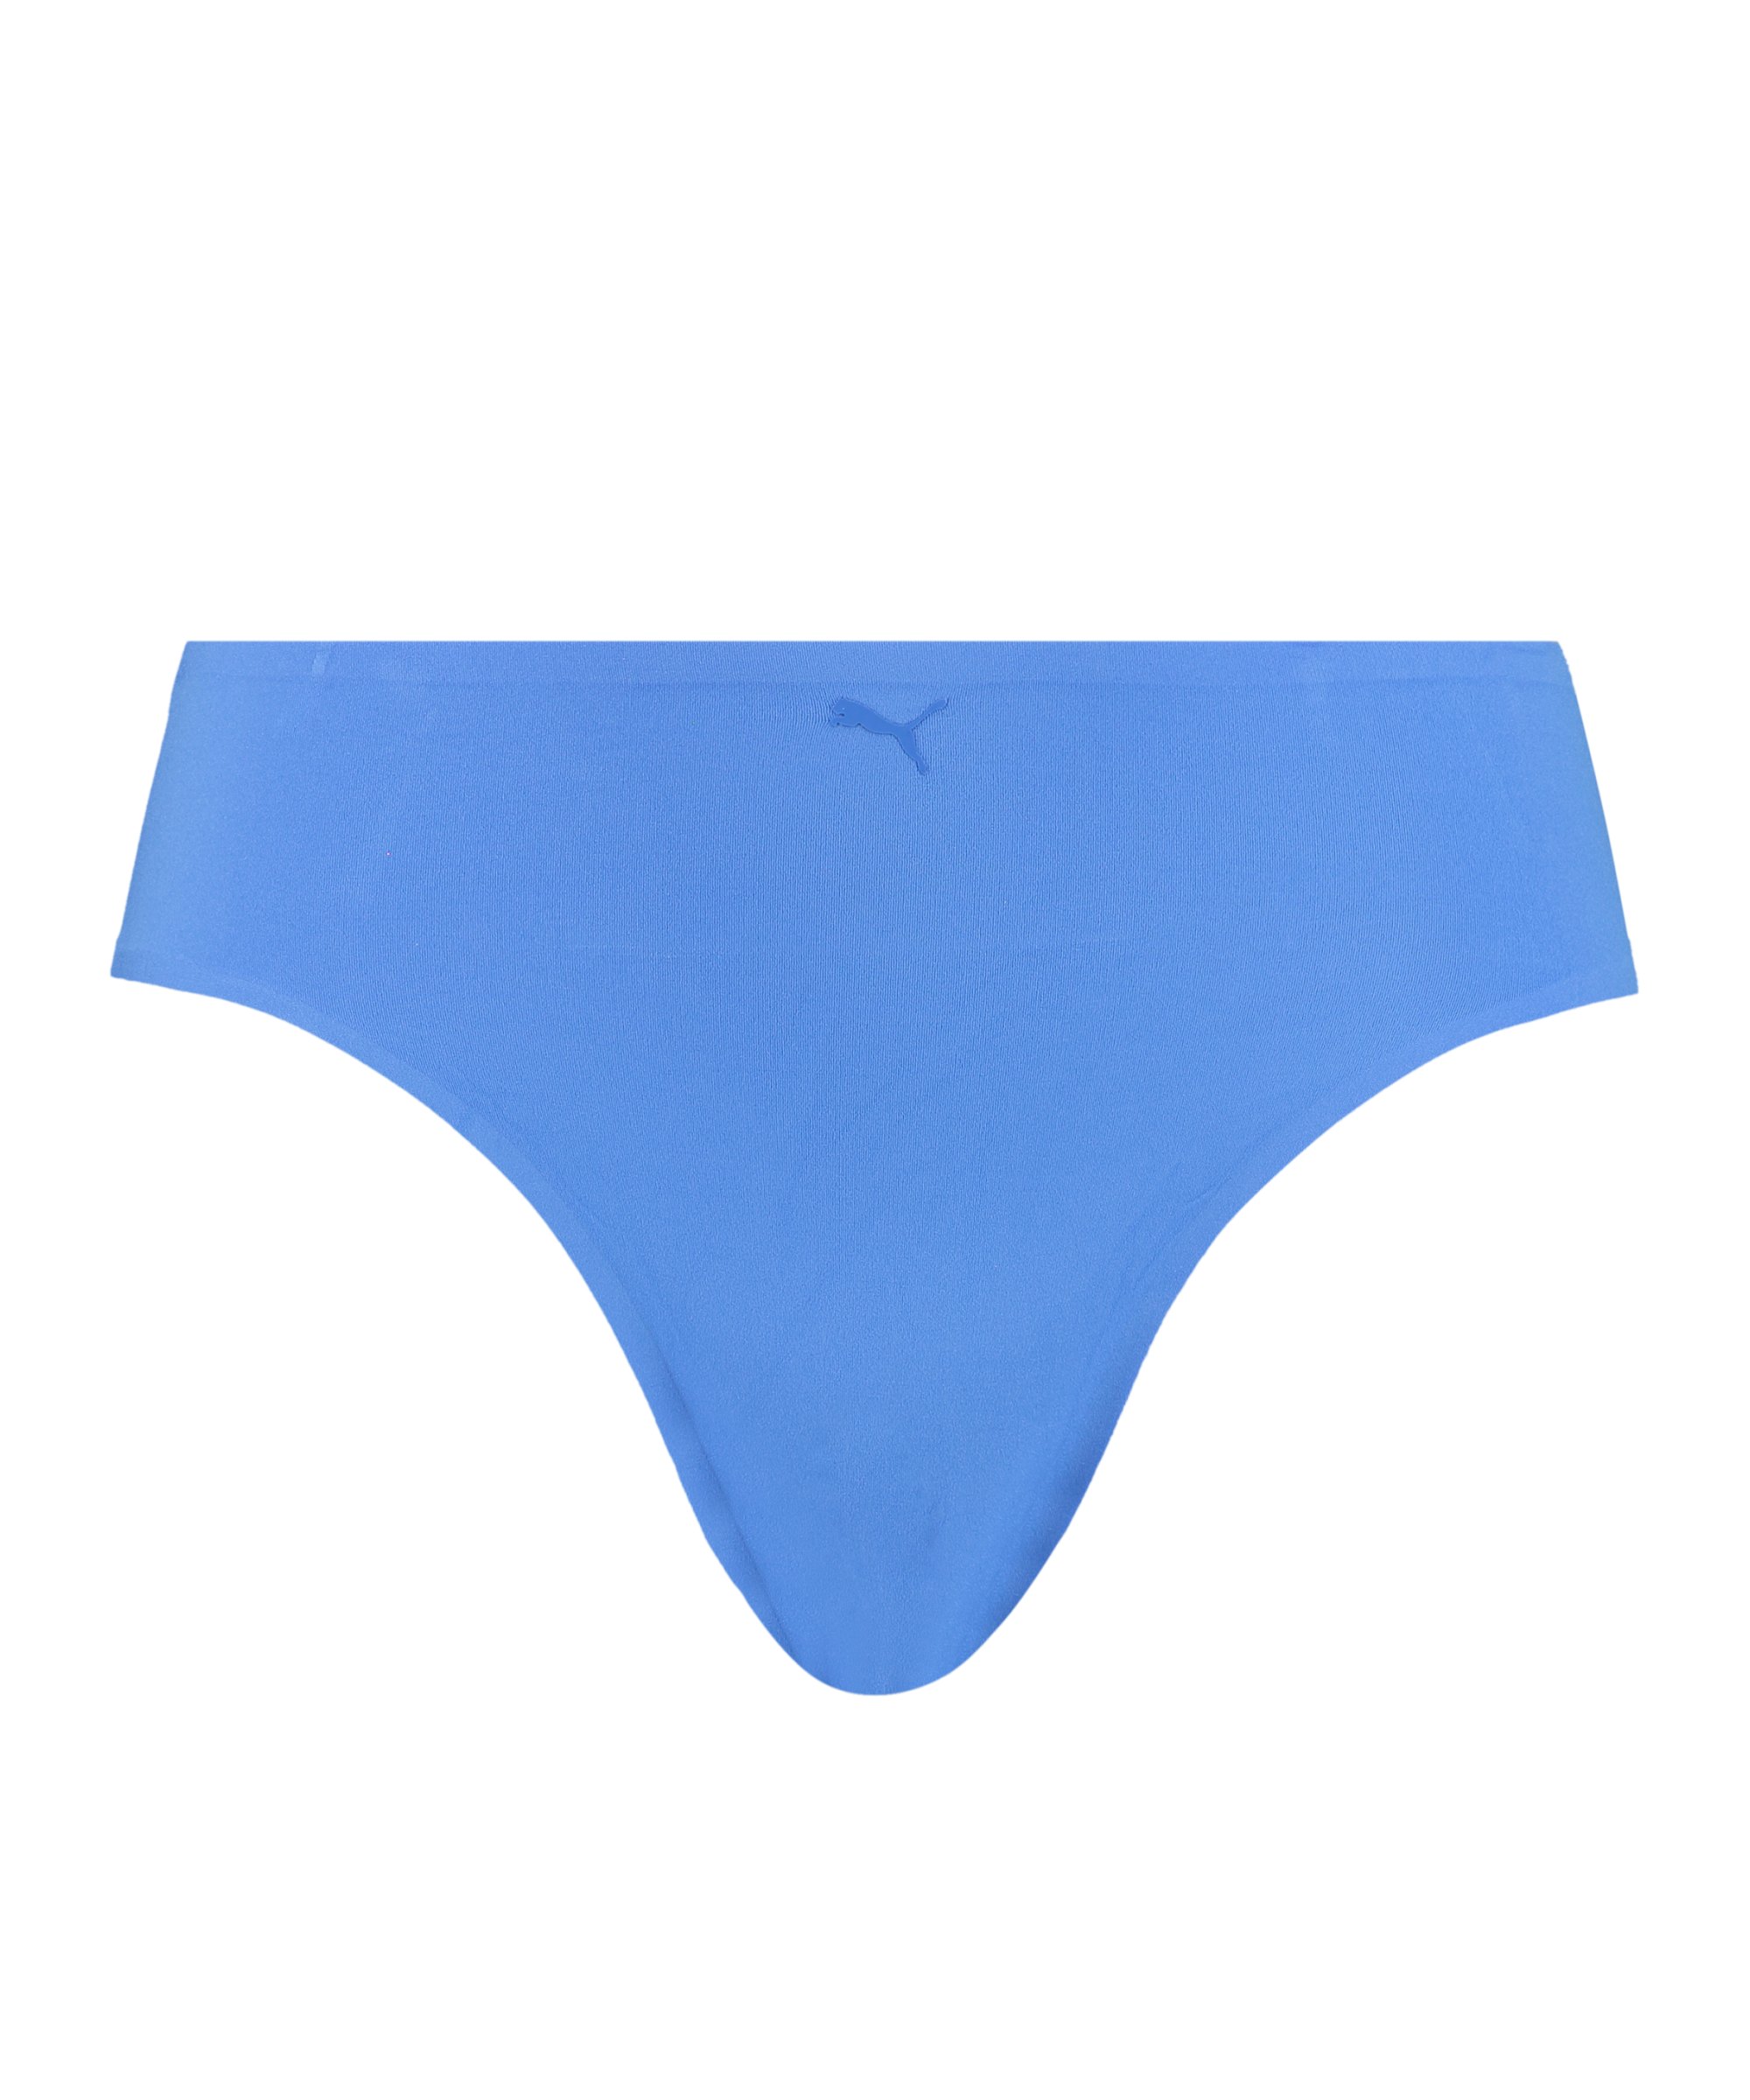 PUMA Slip One Size Damen Blau F004 - blau